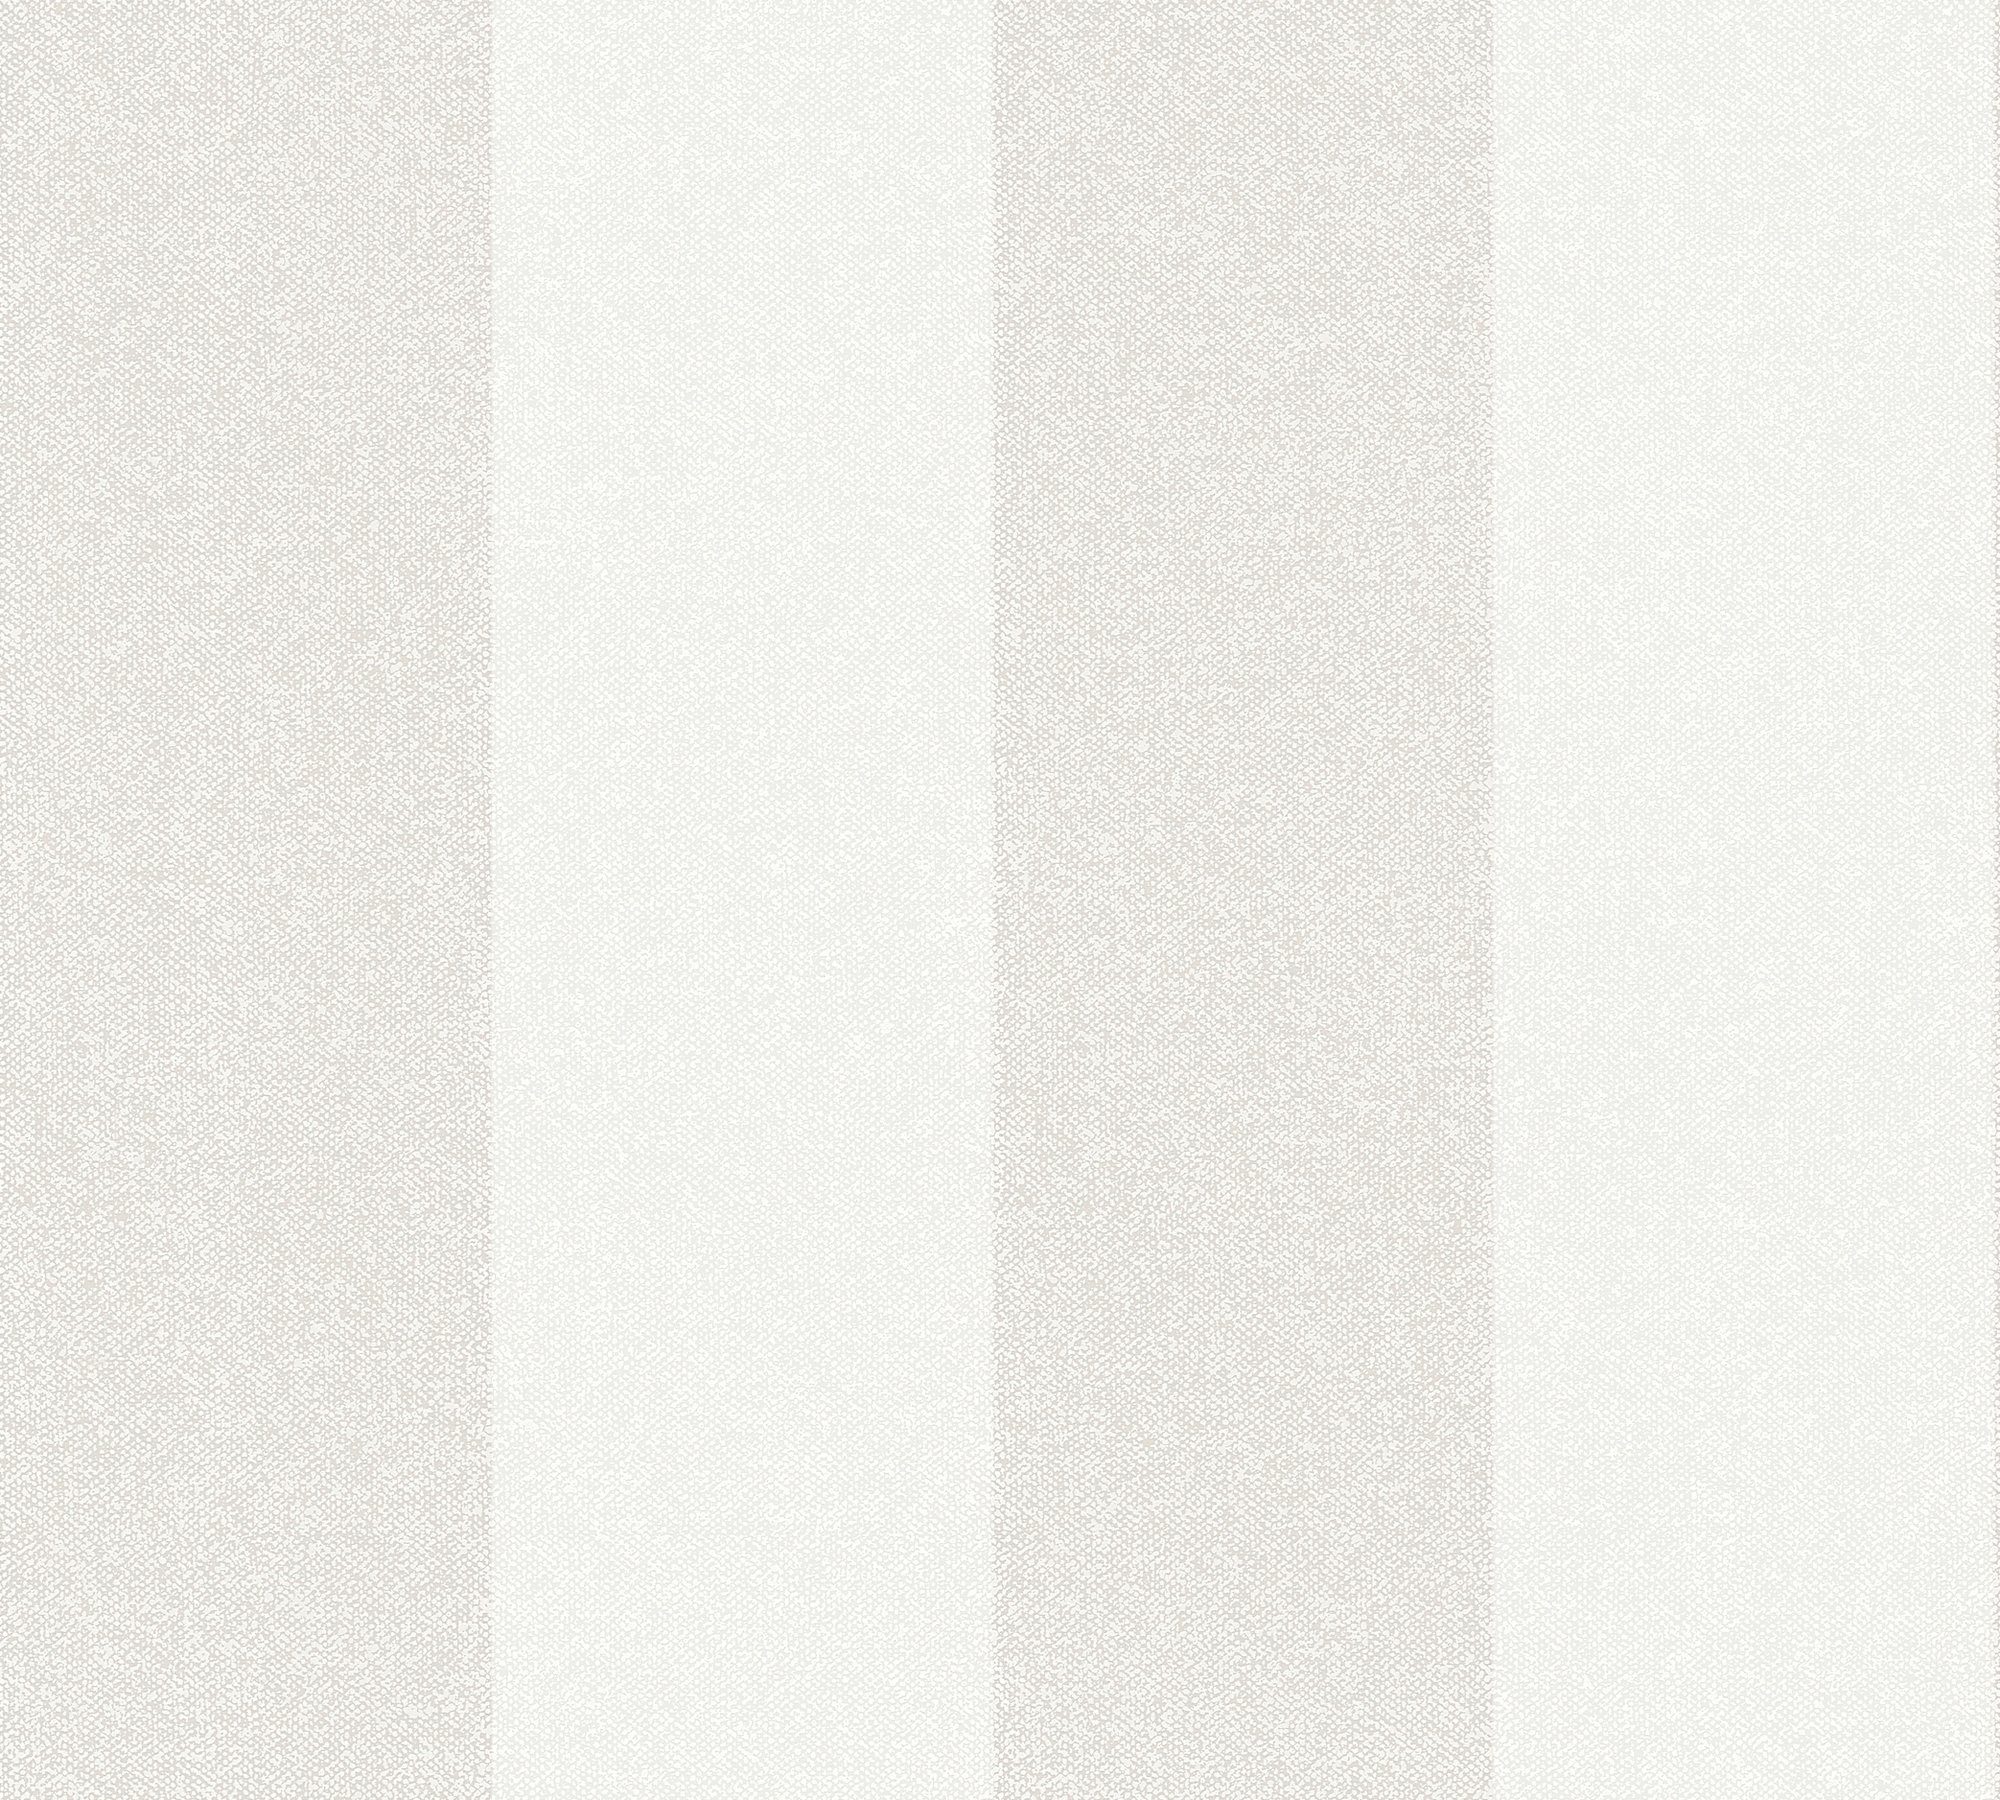 A.S. Création Vliestapete weiß/creme Streifen, Elegance, New aufgeschäumt, Streifen Tapete